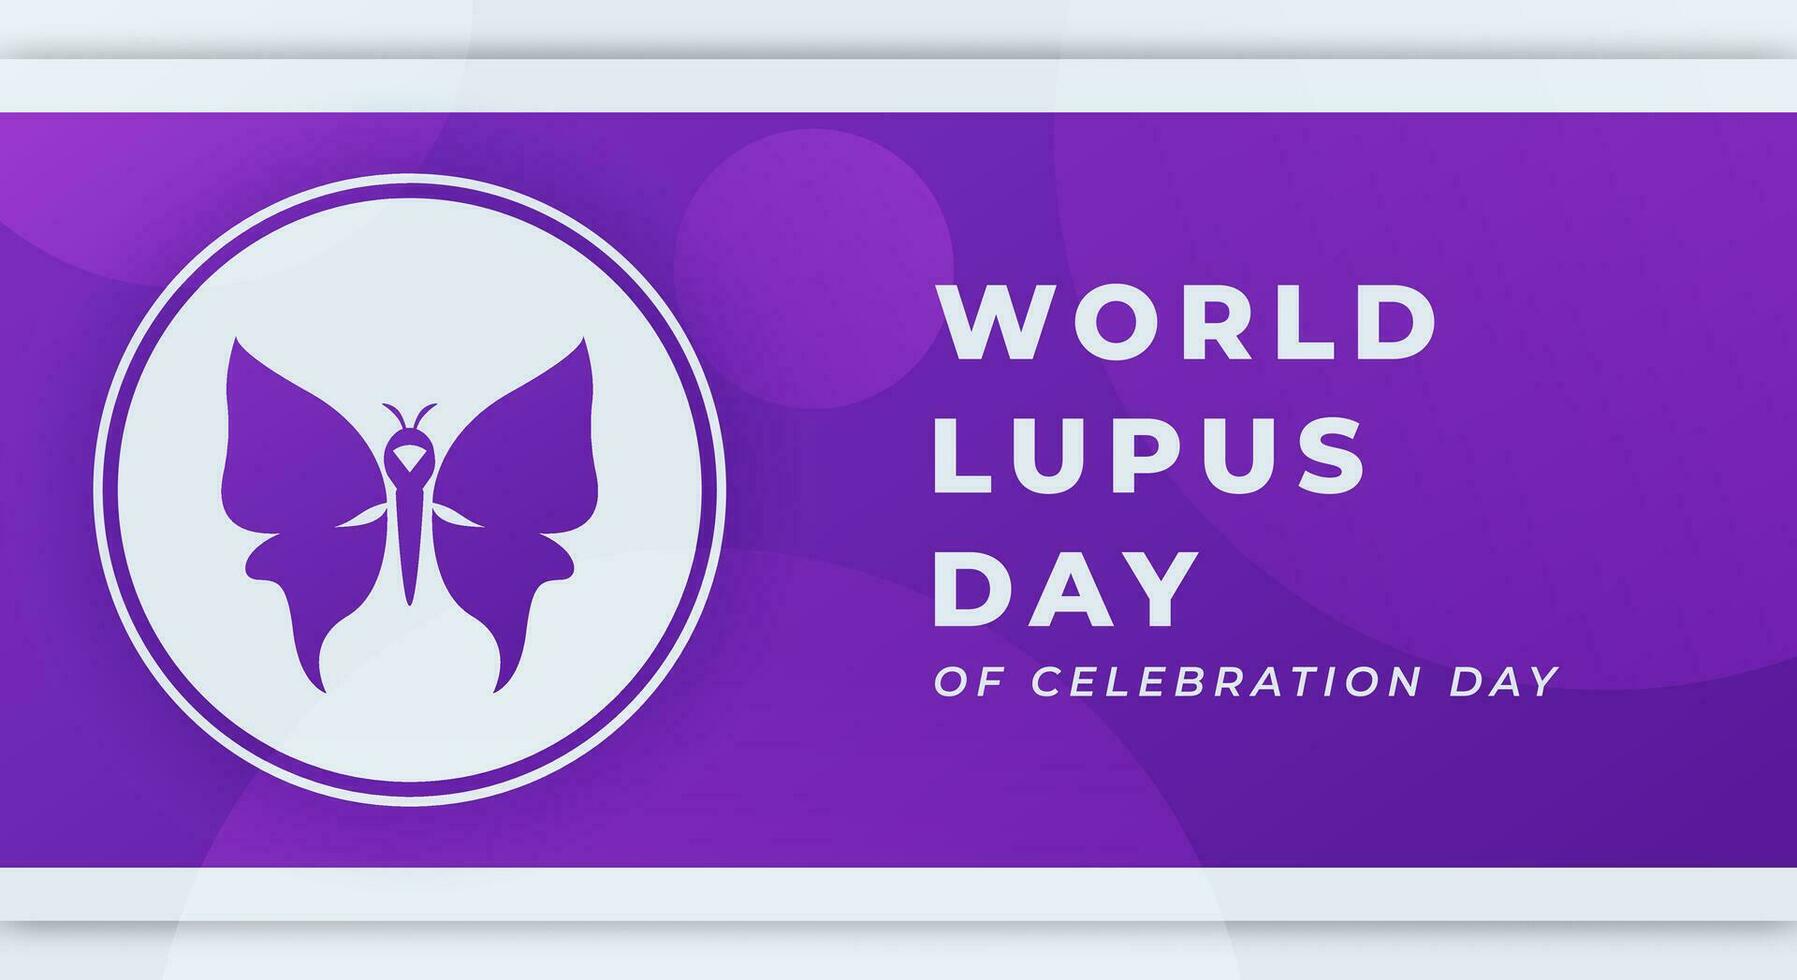 mundo lupus día celebracion vector diseño ilustración para fondo, póster, bandera, publicidad, saludo tarjeta